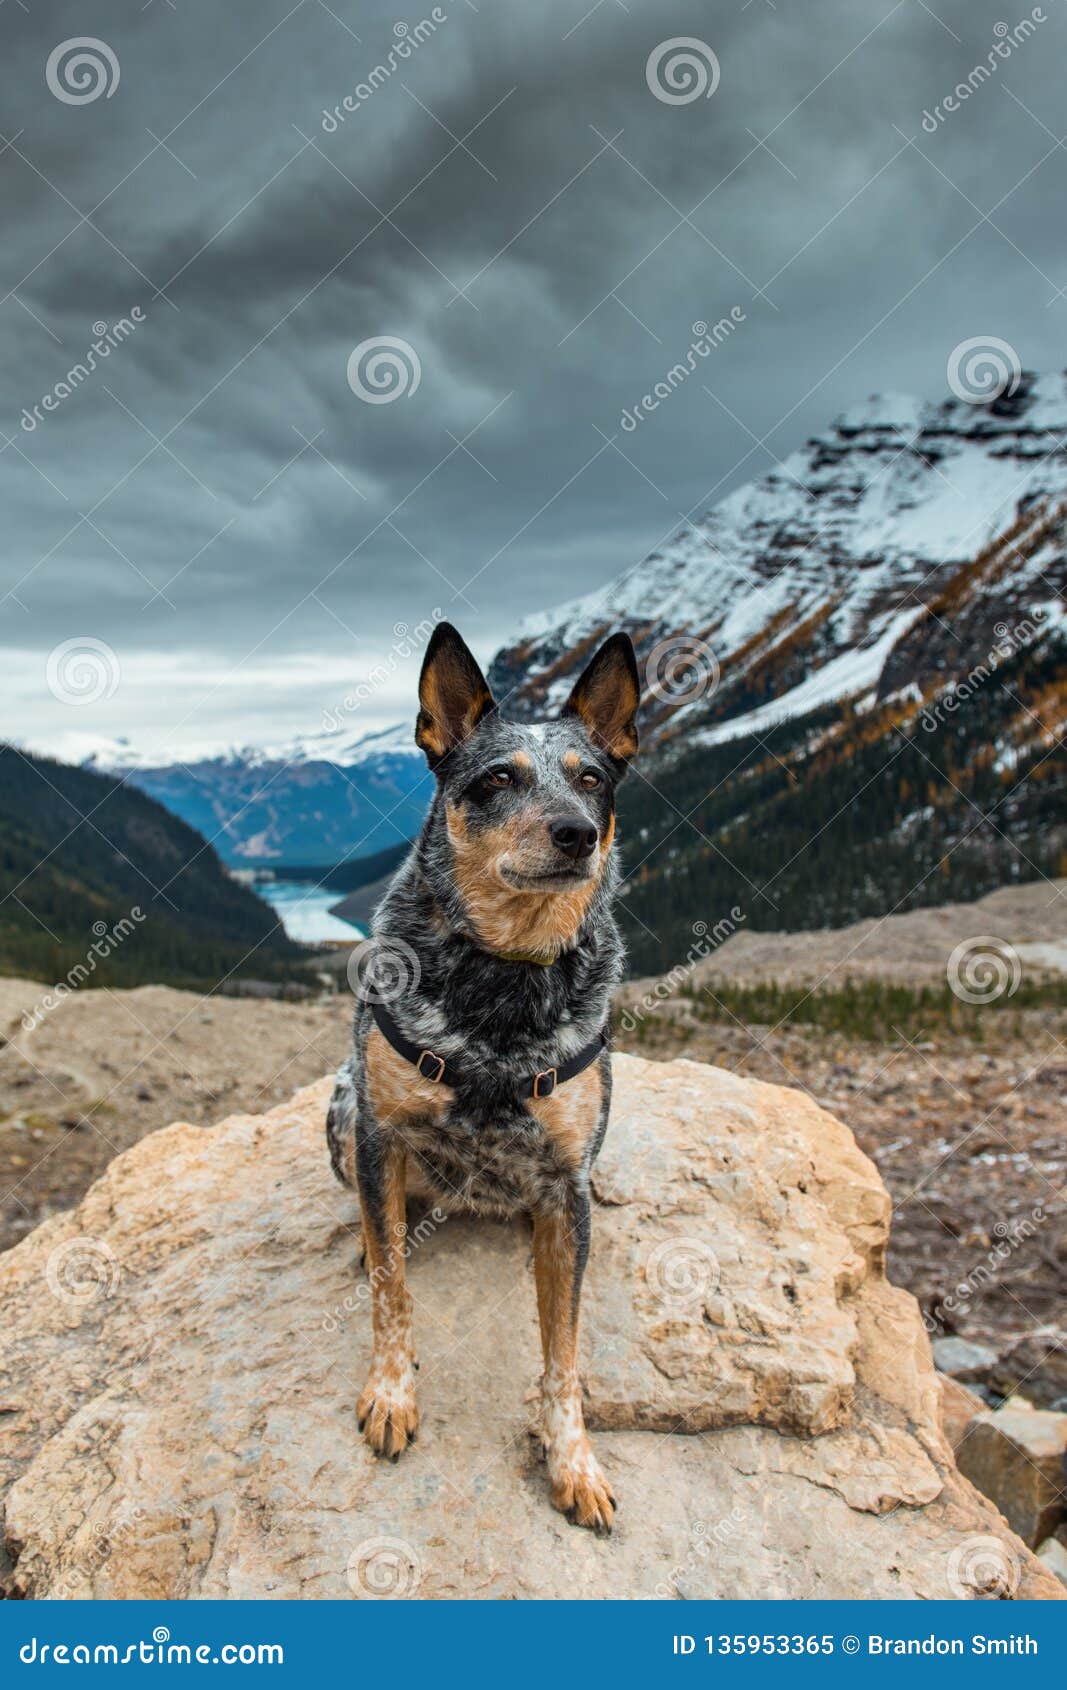 Udvikle zone i tilfælde af 1,577 Blue Heeler Dog Photos - Free & Royalty-Free Stock Photos from  Dreamstime